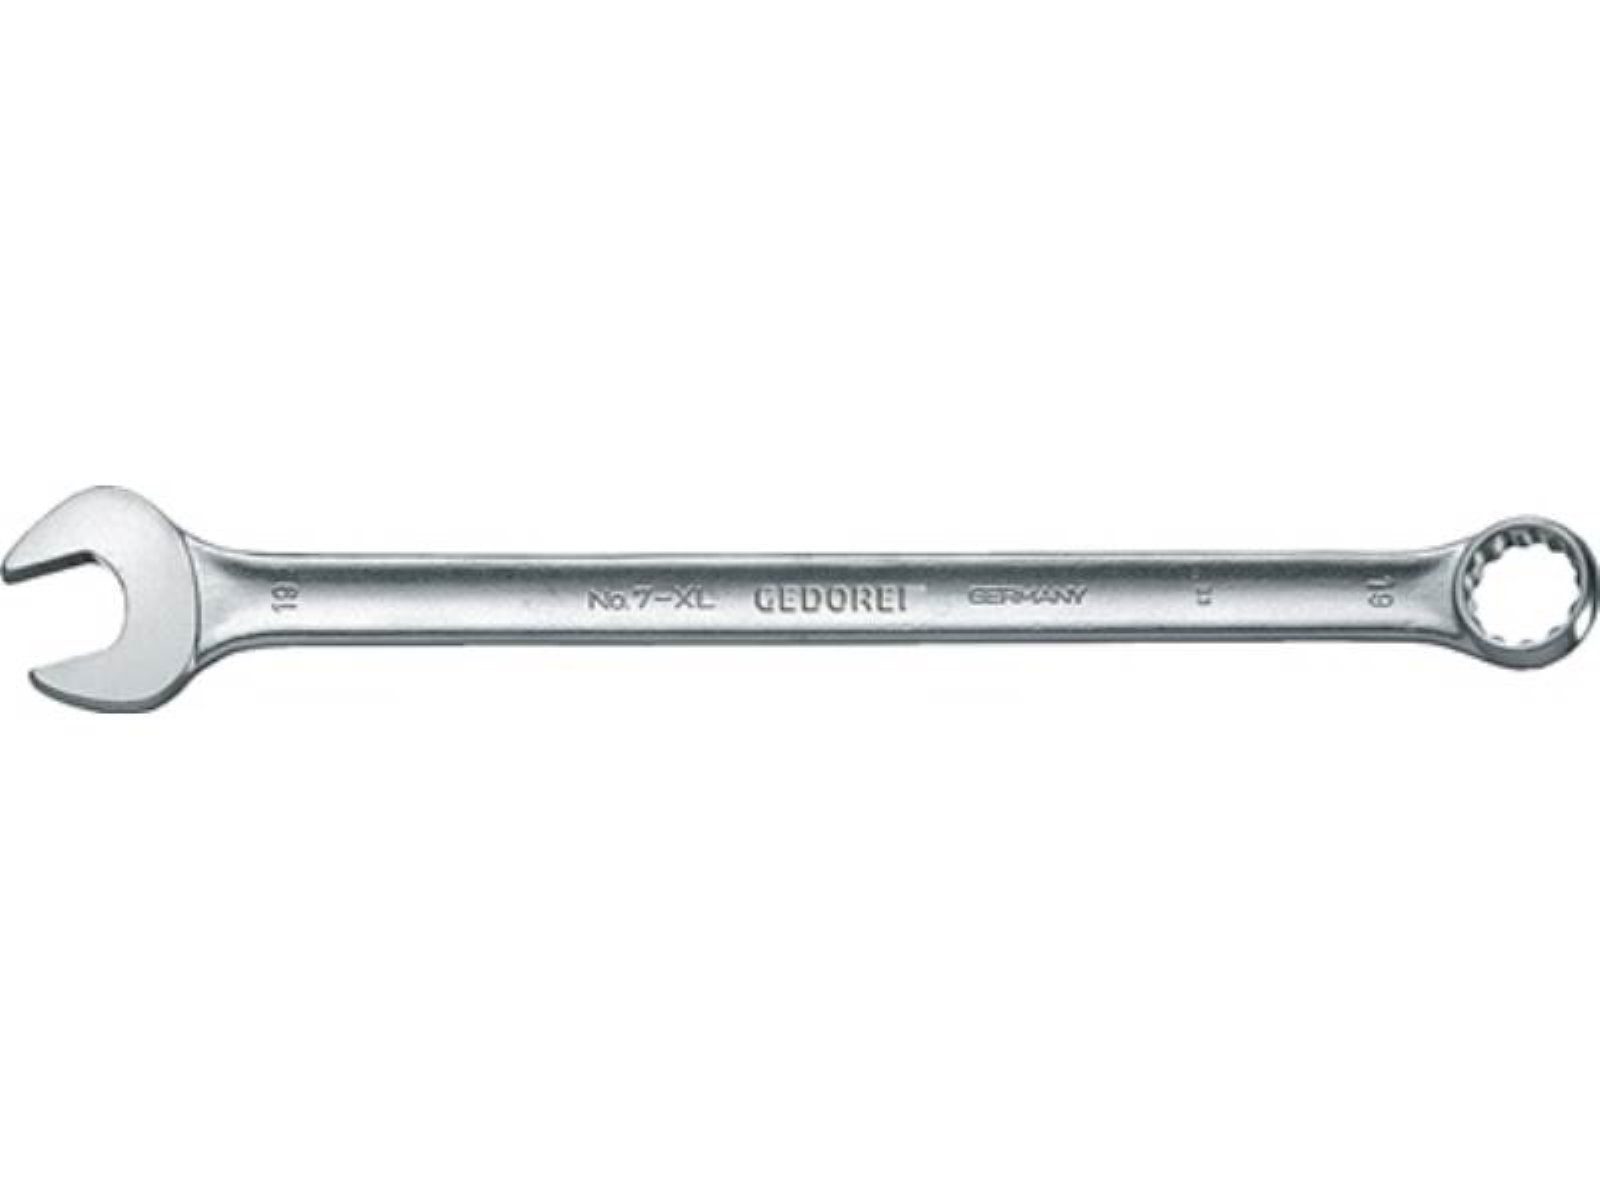 CV-Stahl GEDOR Form 7 Ringmaulschlüssel ext.lang XL SW A 22mm Gedore L.350mm Maulschlüssel